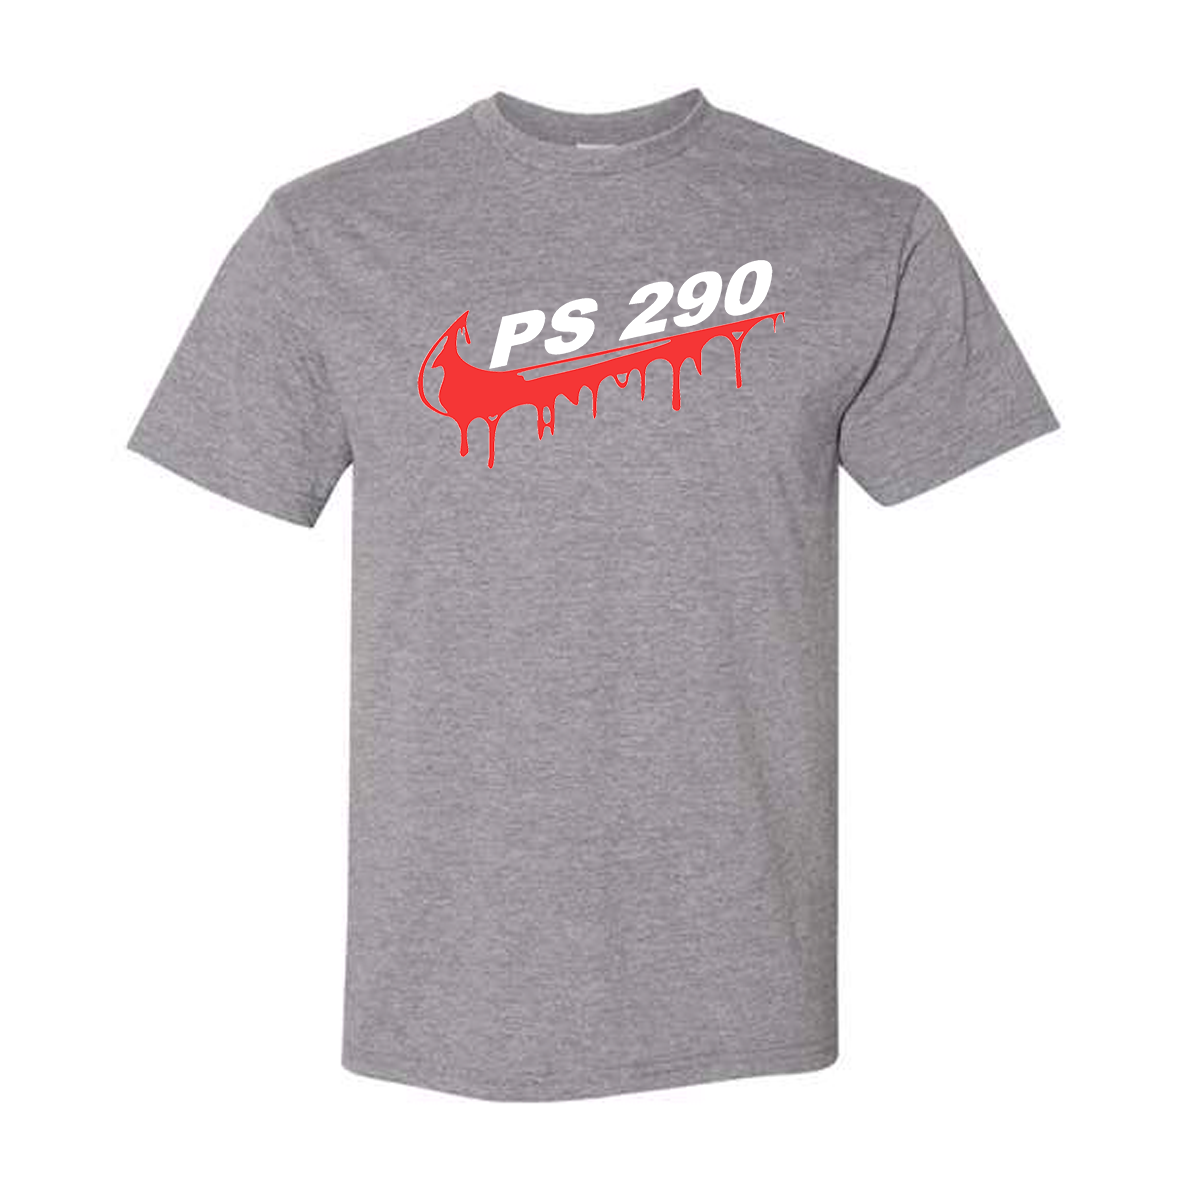 PS 290 Swoosh T-Shirt